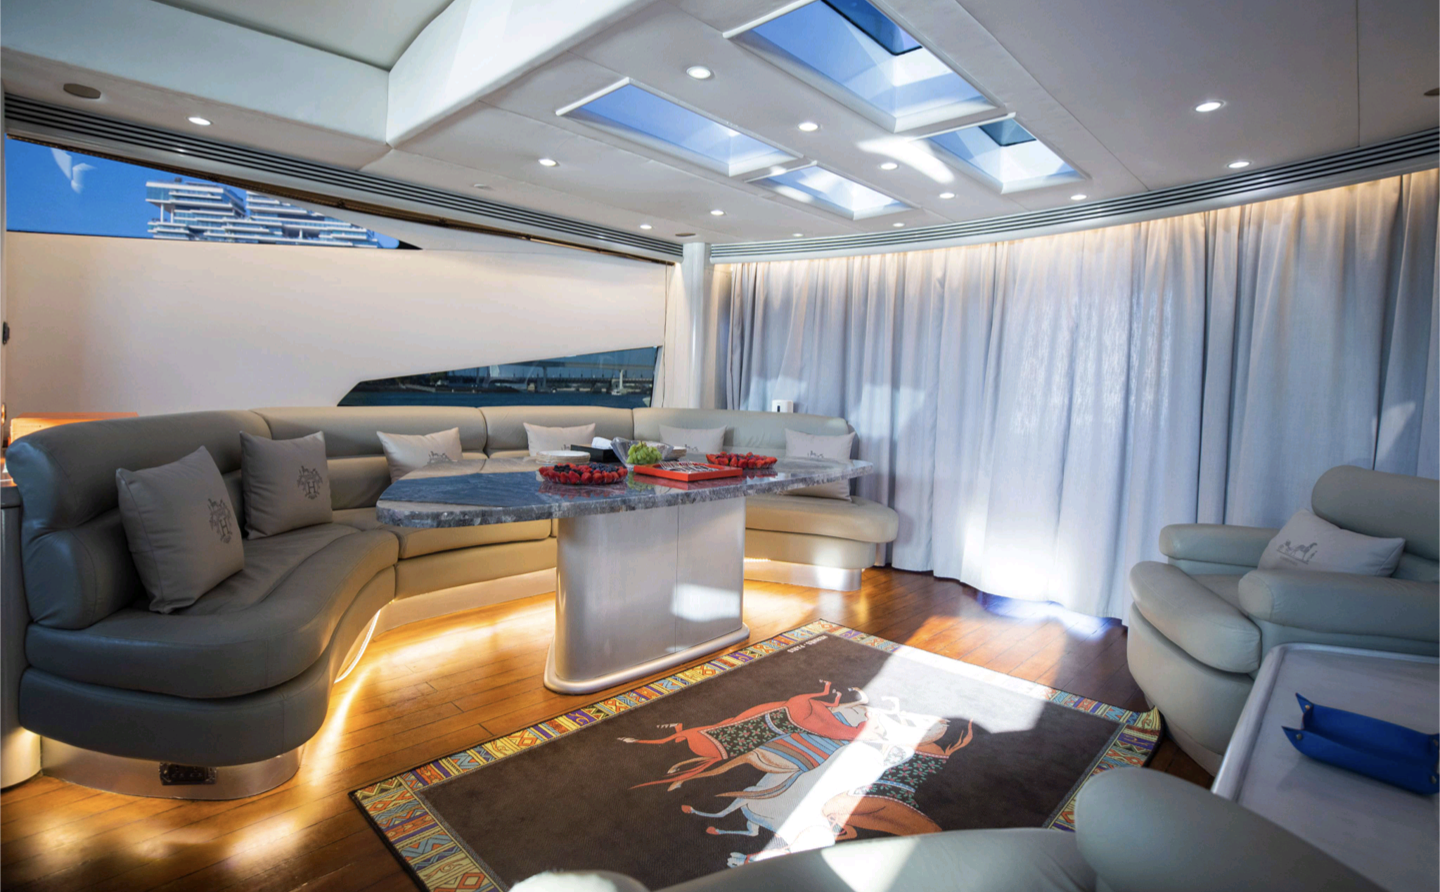 92ft UD30 Luxury Mega Yacht Sunseeker Vessel, 20 pax - One Hour (Dubai Marina)